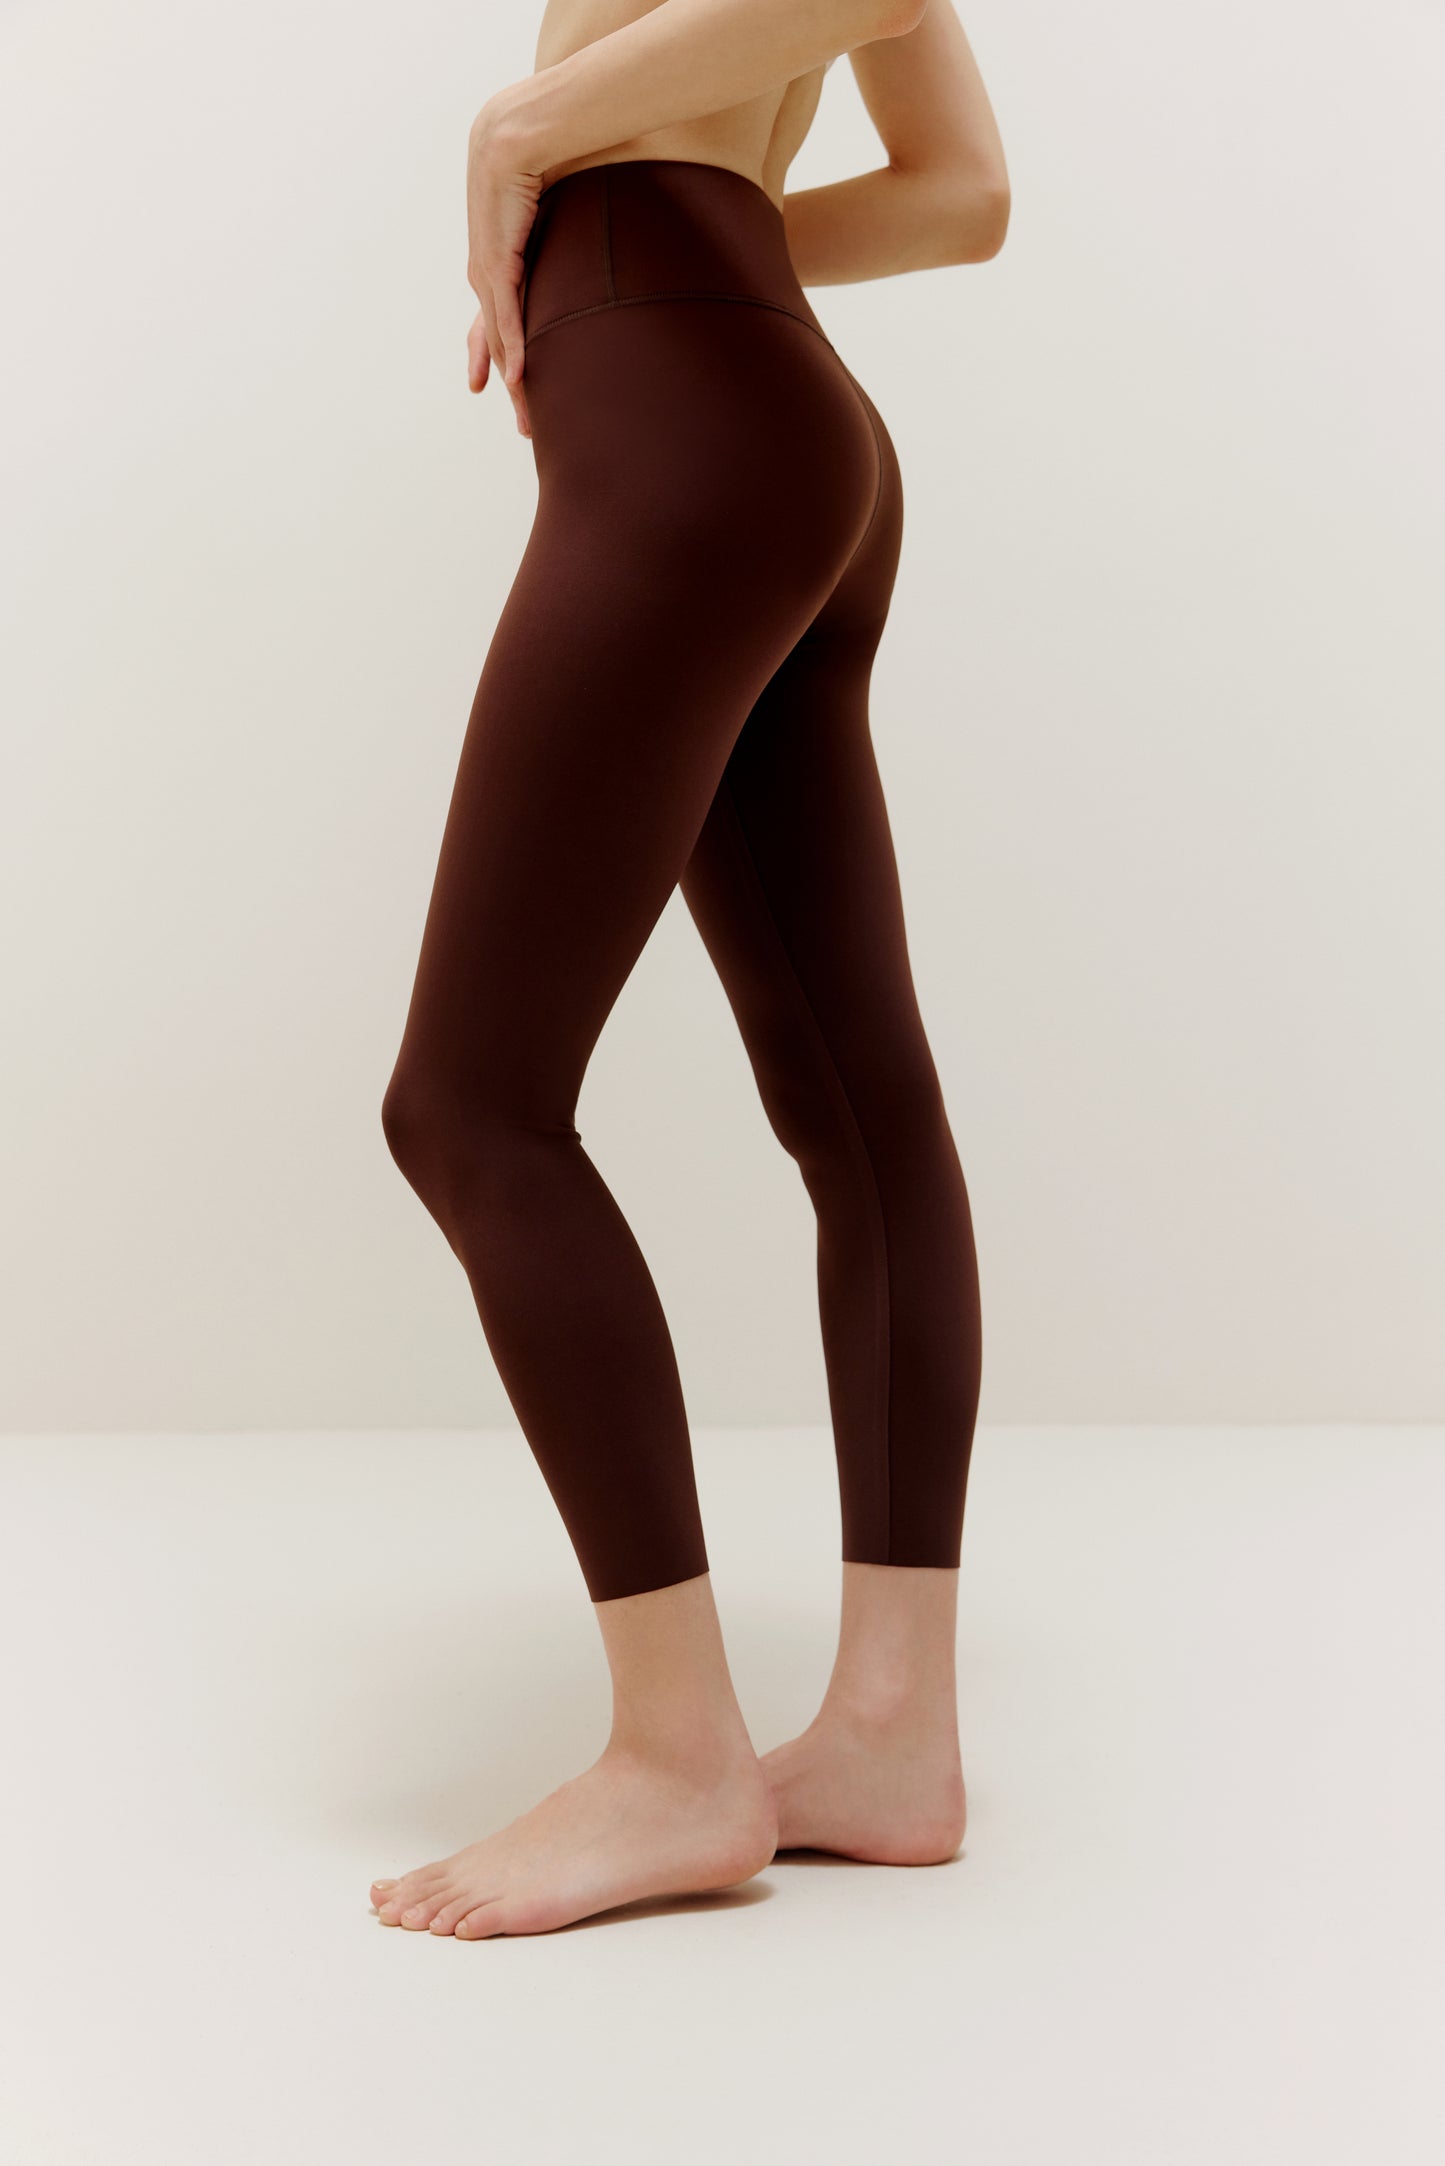 Side view of woman wearing brown leggings